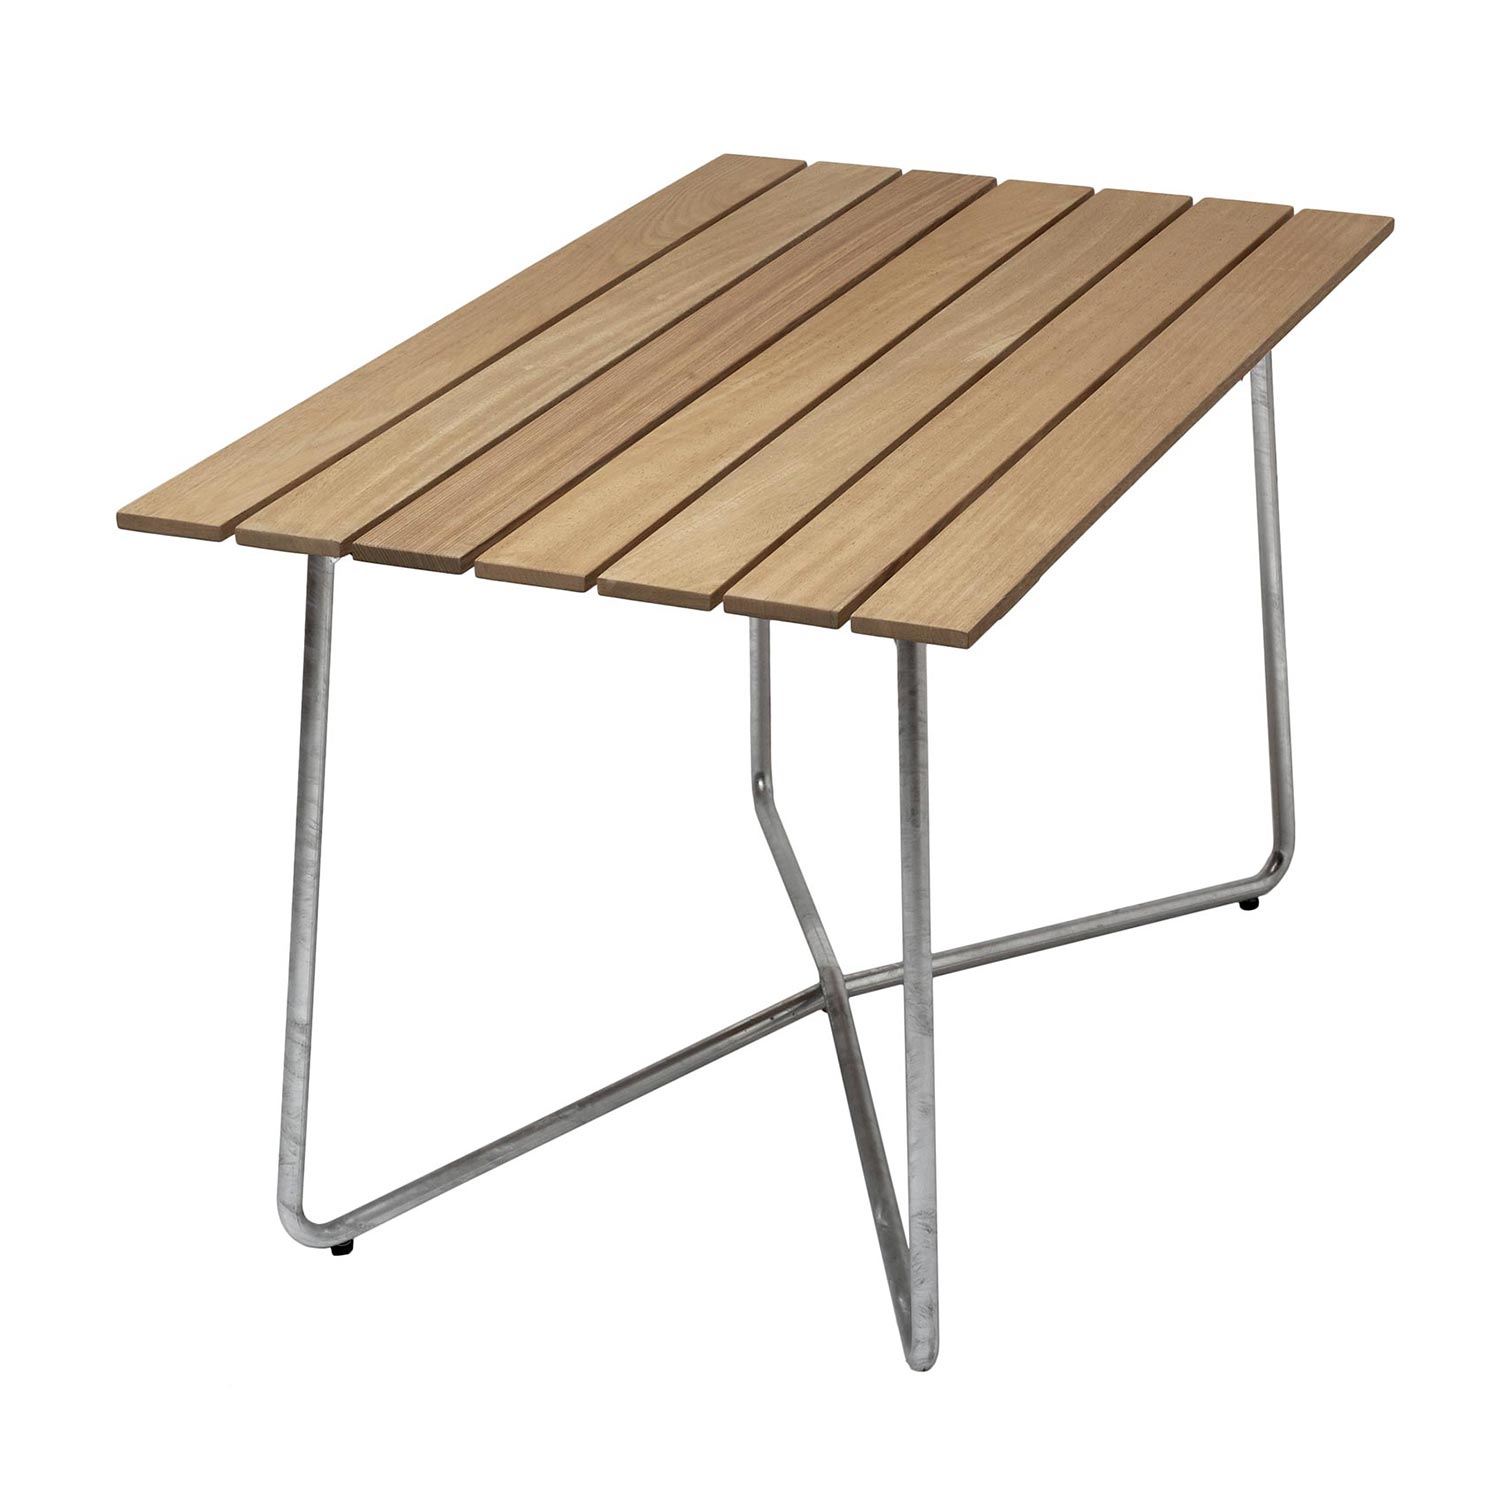 B25A bord oljad ek / varmförzinkat stativ 120×70 cm